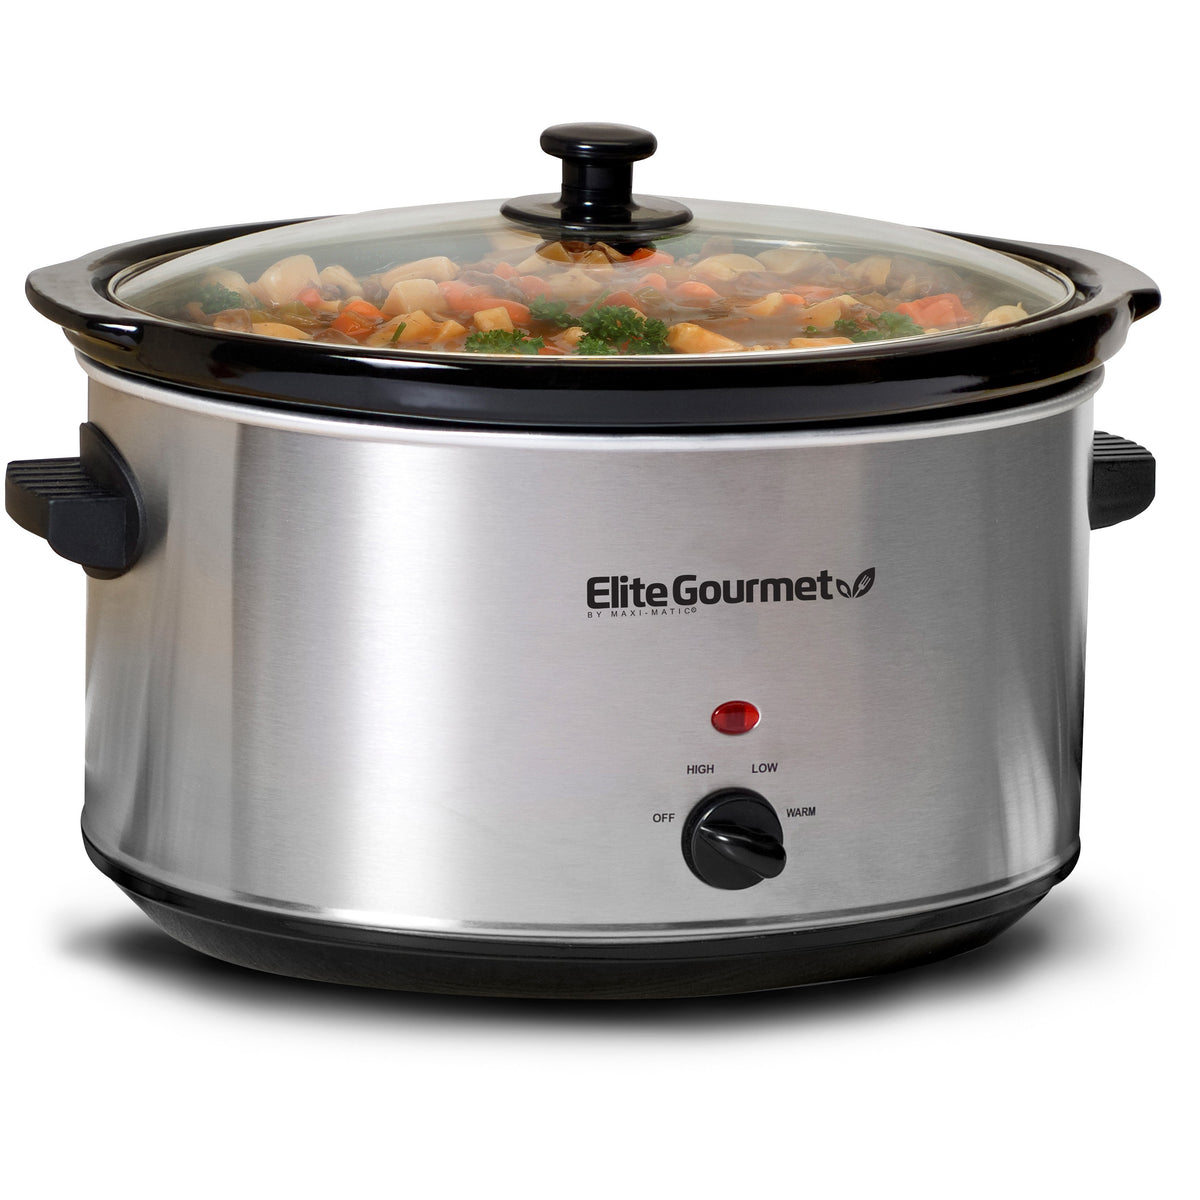  Elite Gourmet MST-900D Digital Programmable Slow Cooker, Oval  Adjustable Temp, Entrees, Sauces, Stews & Dips, Dishwasher Safe Glass Lid &  Crock (8.5 Quart, Stainless Steel): Home & Kitchen